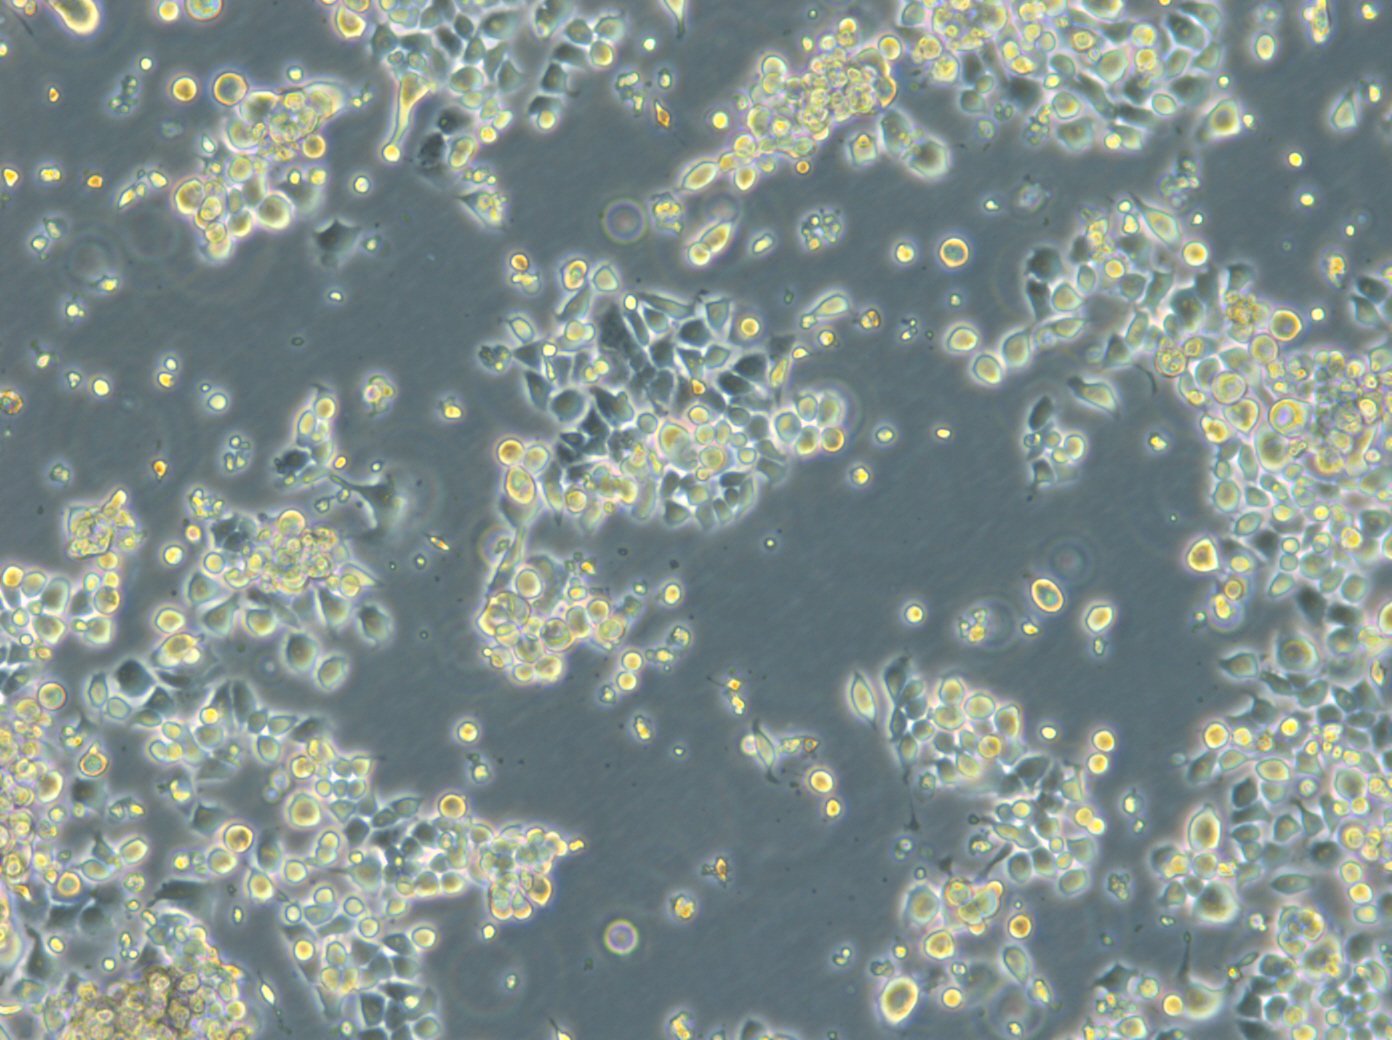 HROC87 T0 M2 Cellules